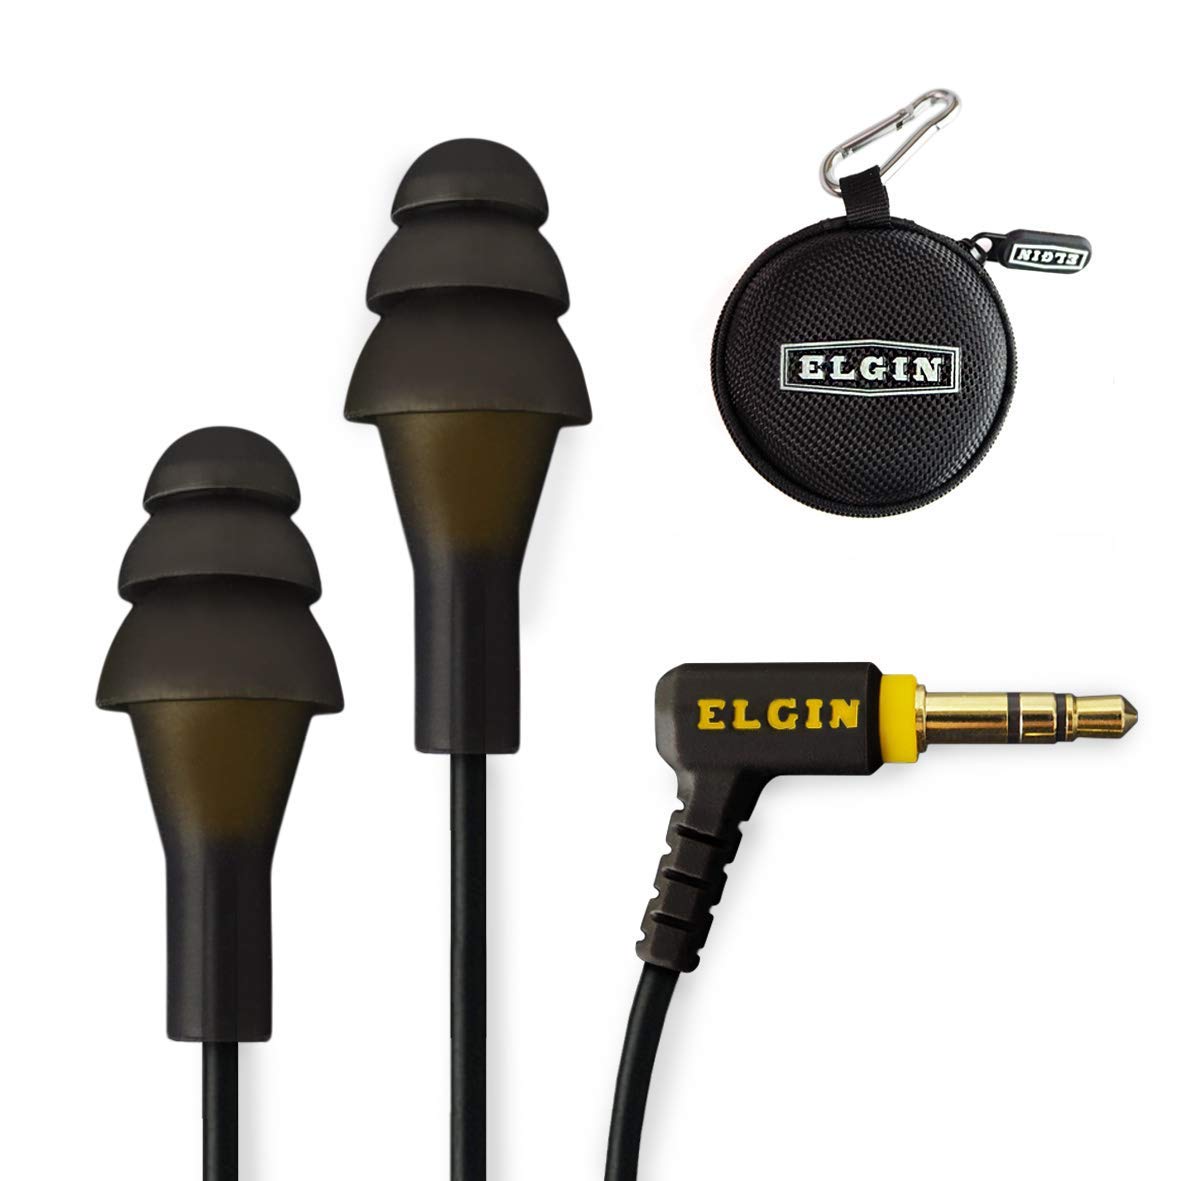 Elgin Zatyczki do uszu Ruckus | Słuchawki douszne zgodne z OSHA: Izolujące słuchawki douszne